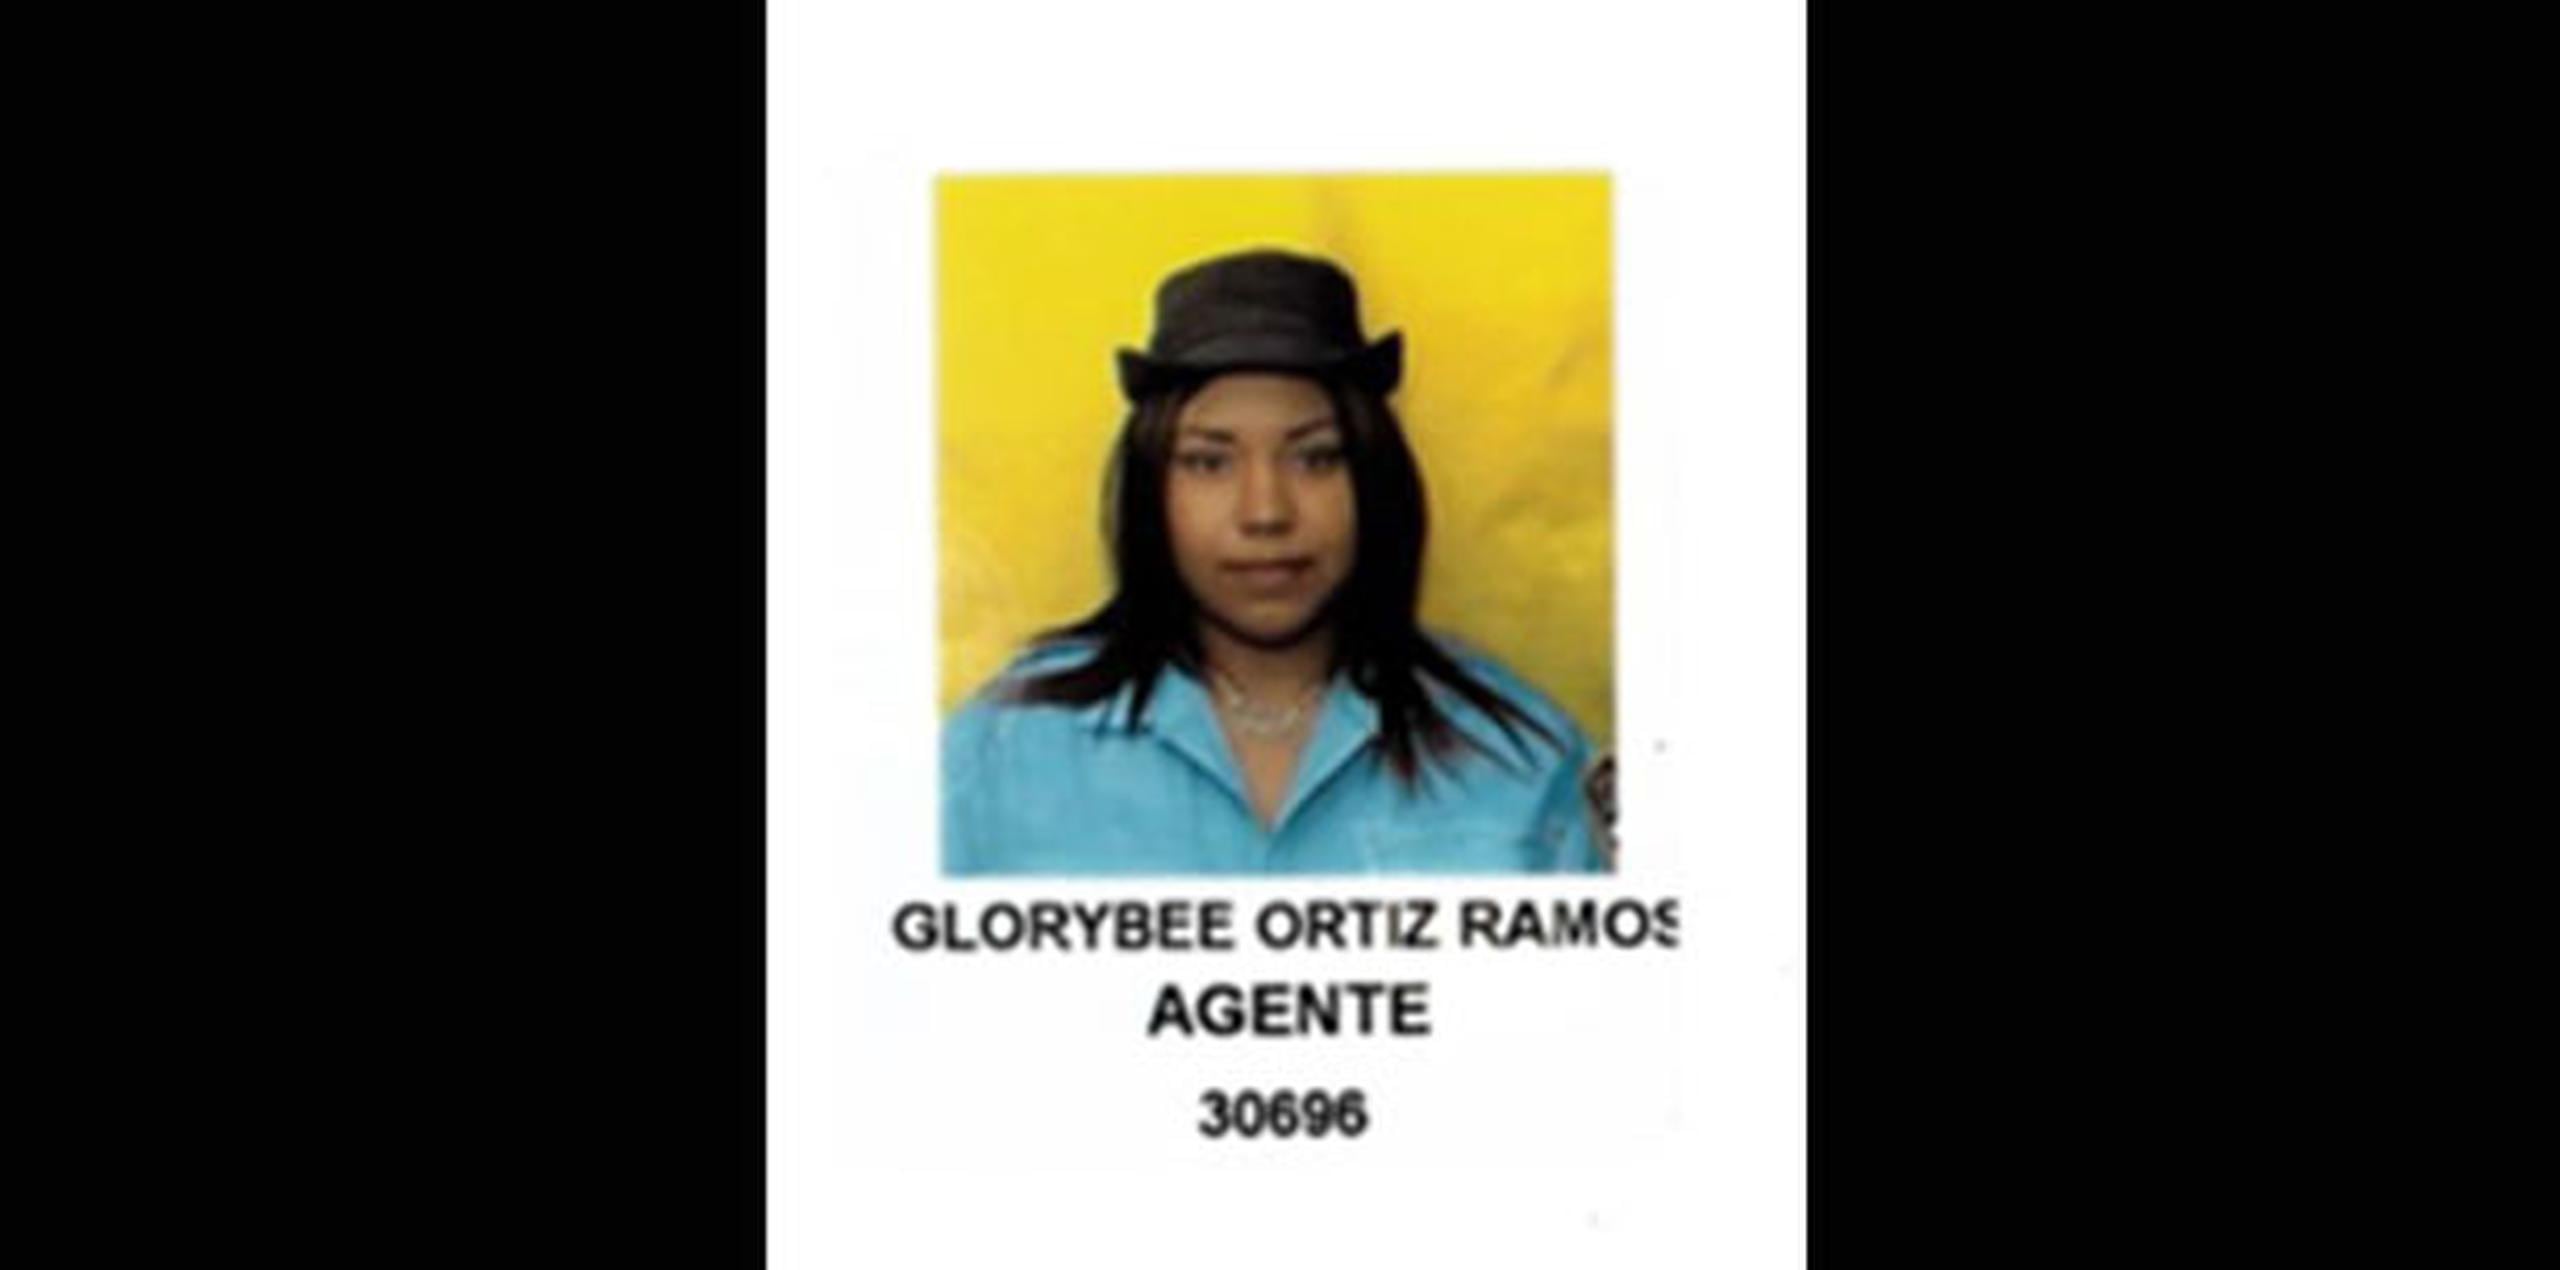 La agente asesinada fue identificada como Glorybee Ortiz Ramos, de 34 años. (Archivo)